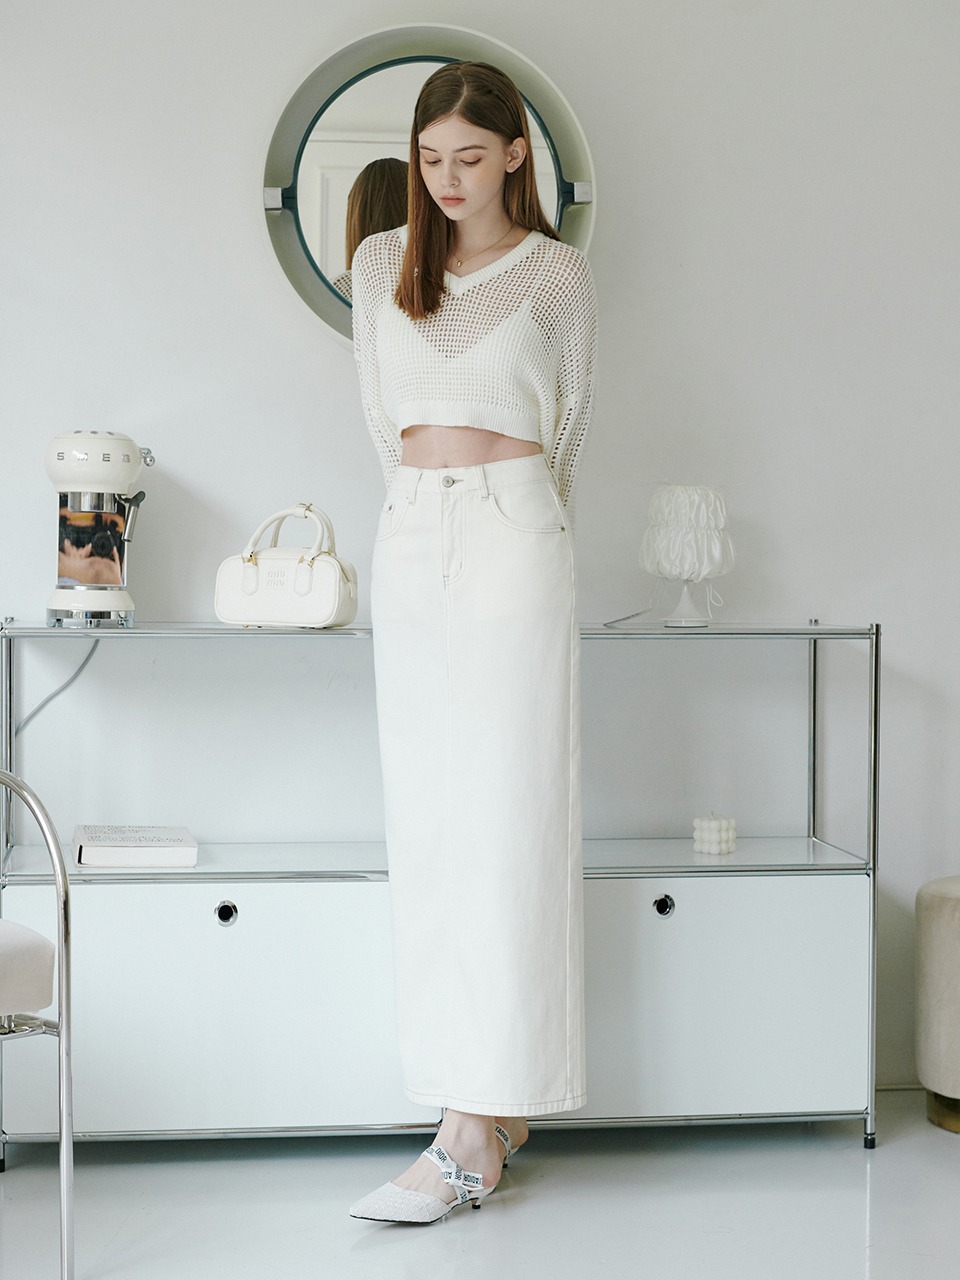 Cotton H-Line Long Skirt_2color